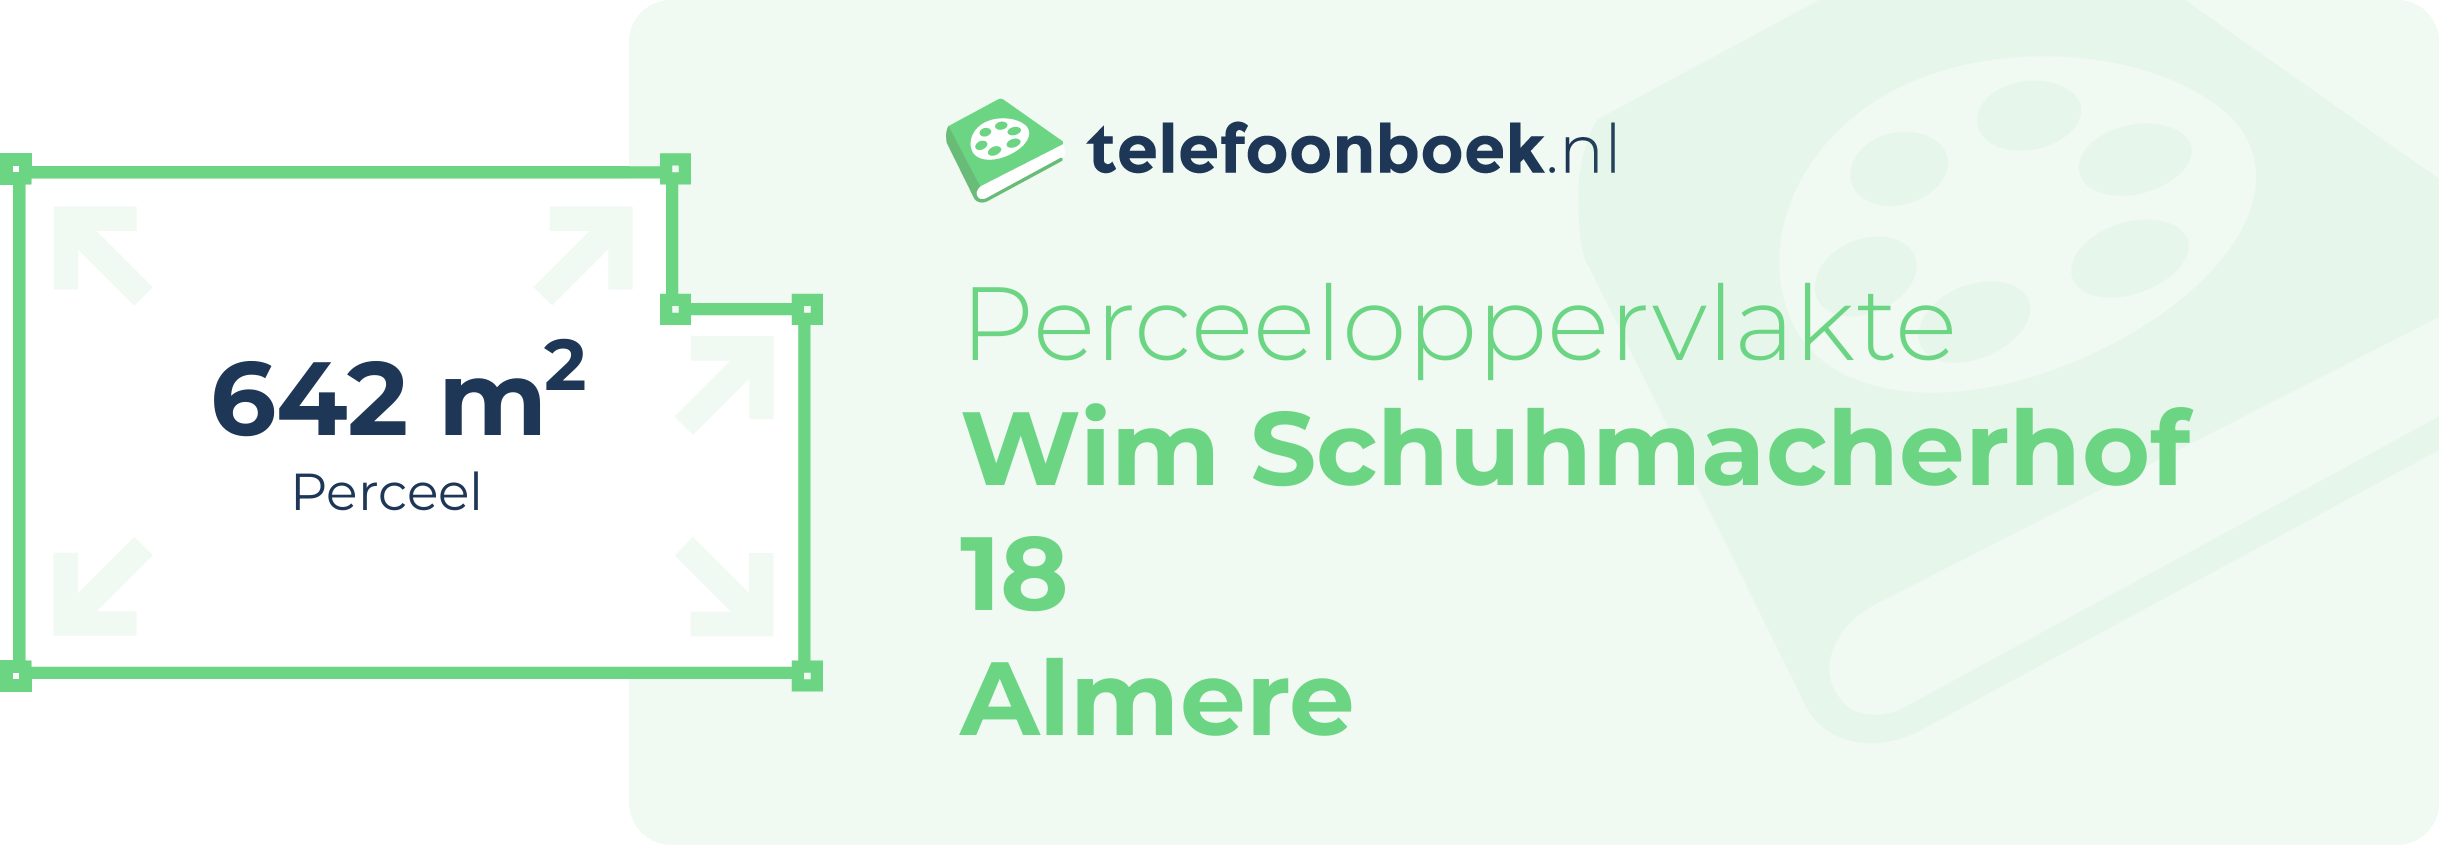 Perceeloppervlakte Wim Schuhmacherhof 18 Almere